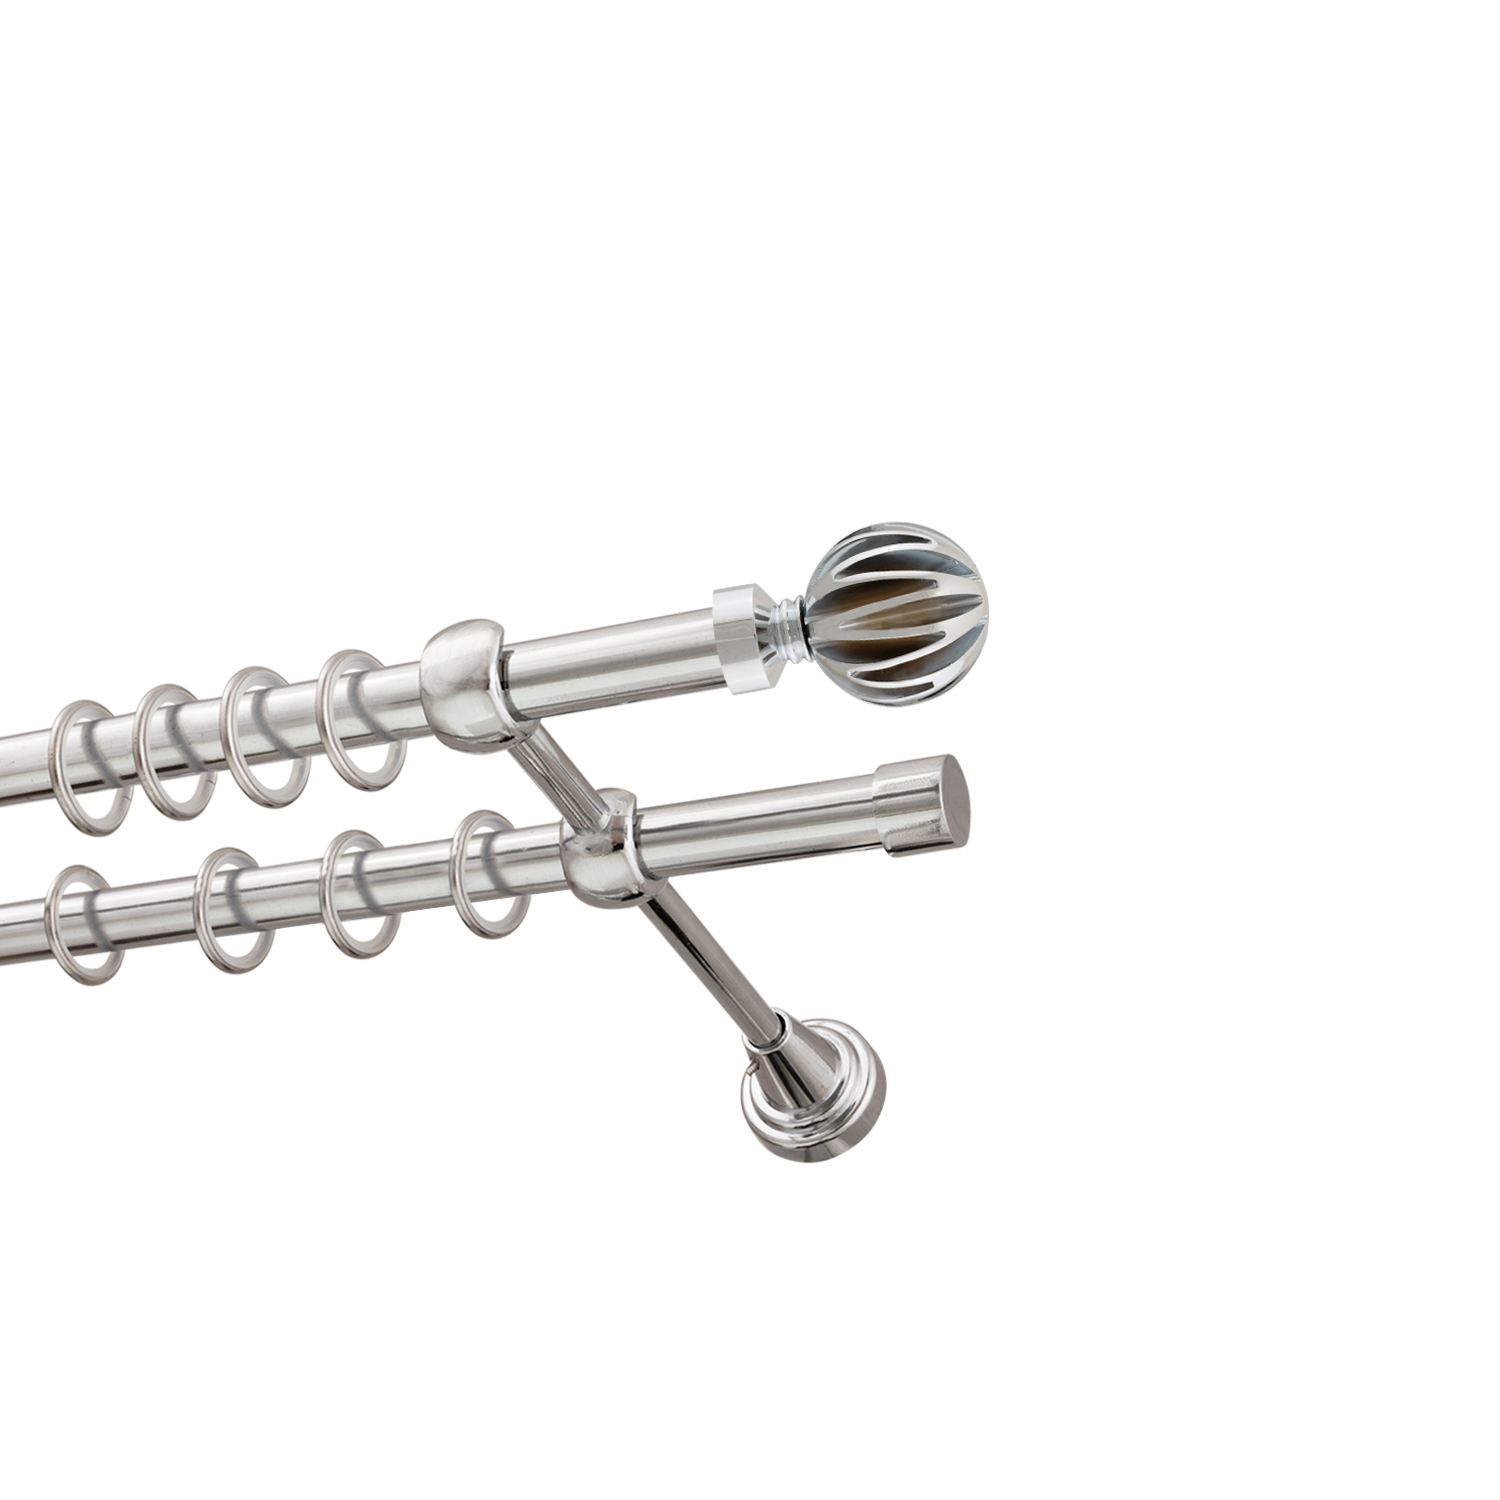 Металлический карниз для штор Шафран, двухрядный 16/16 мм, серебро, гладкая штанга, длина 300 см - фото Wikidecor.ru